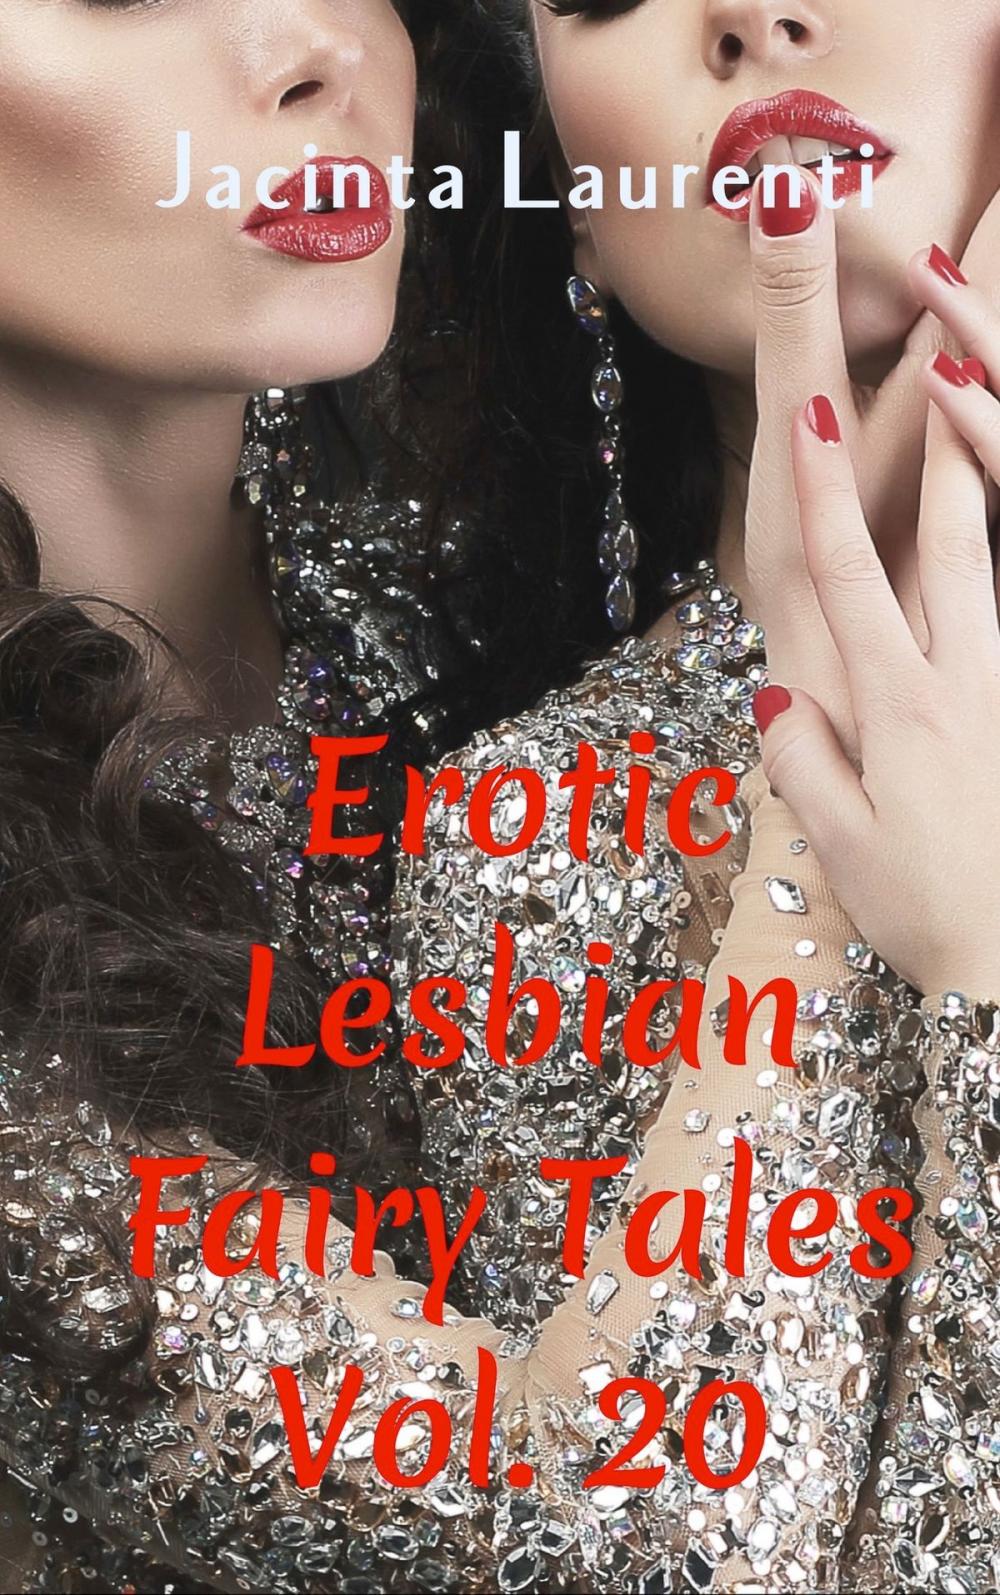 Big bigCover of Erotic Lesbian Fairy Tales Vol. 20